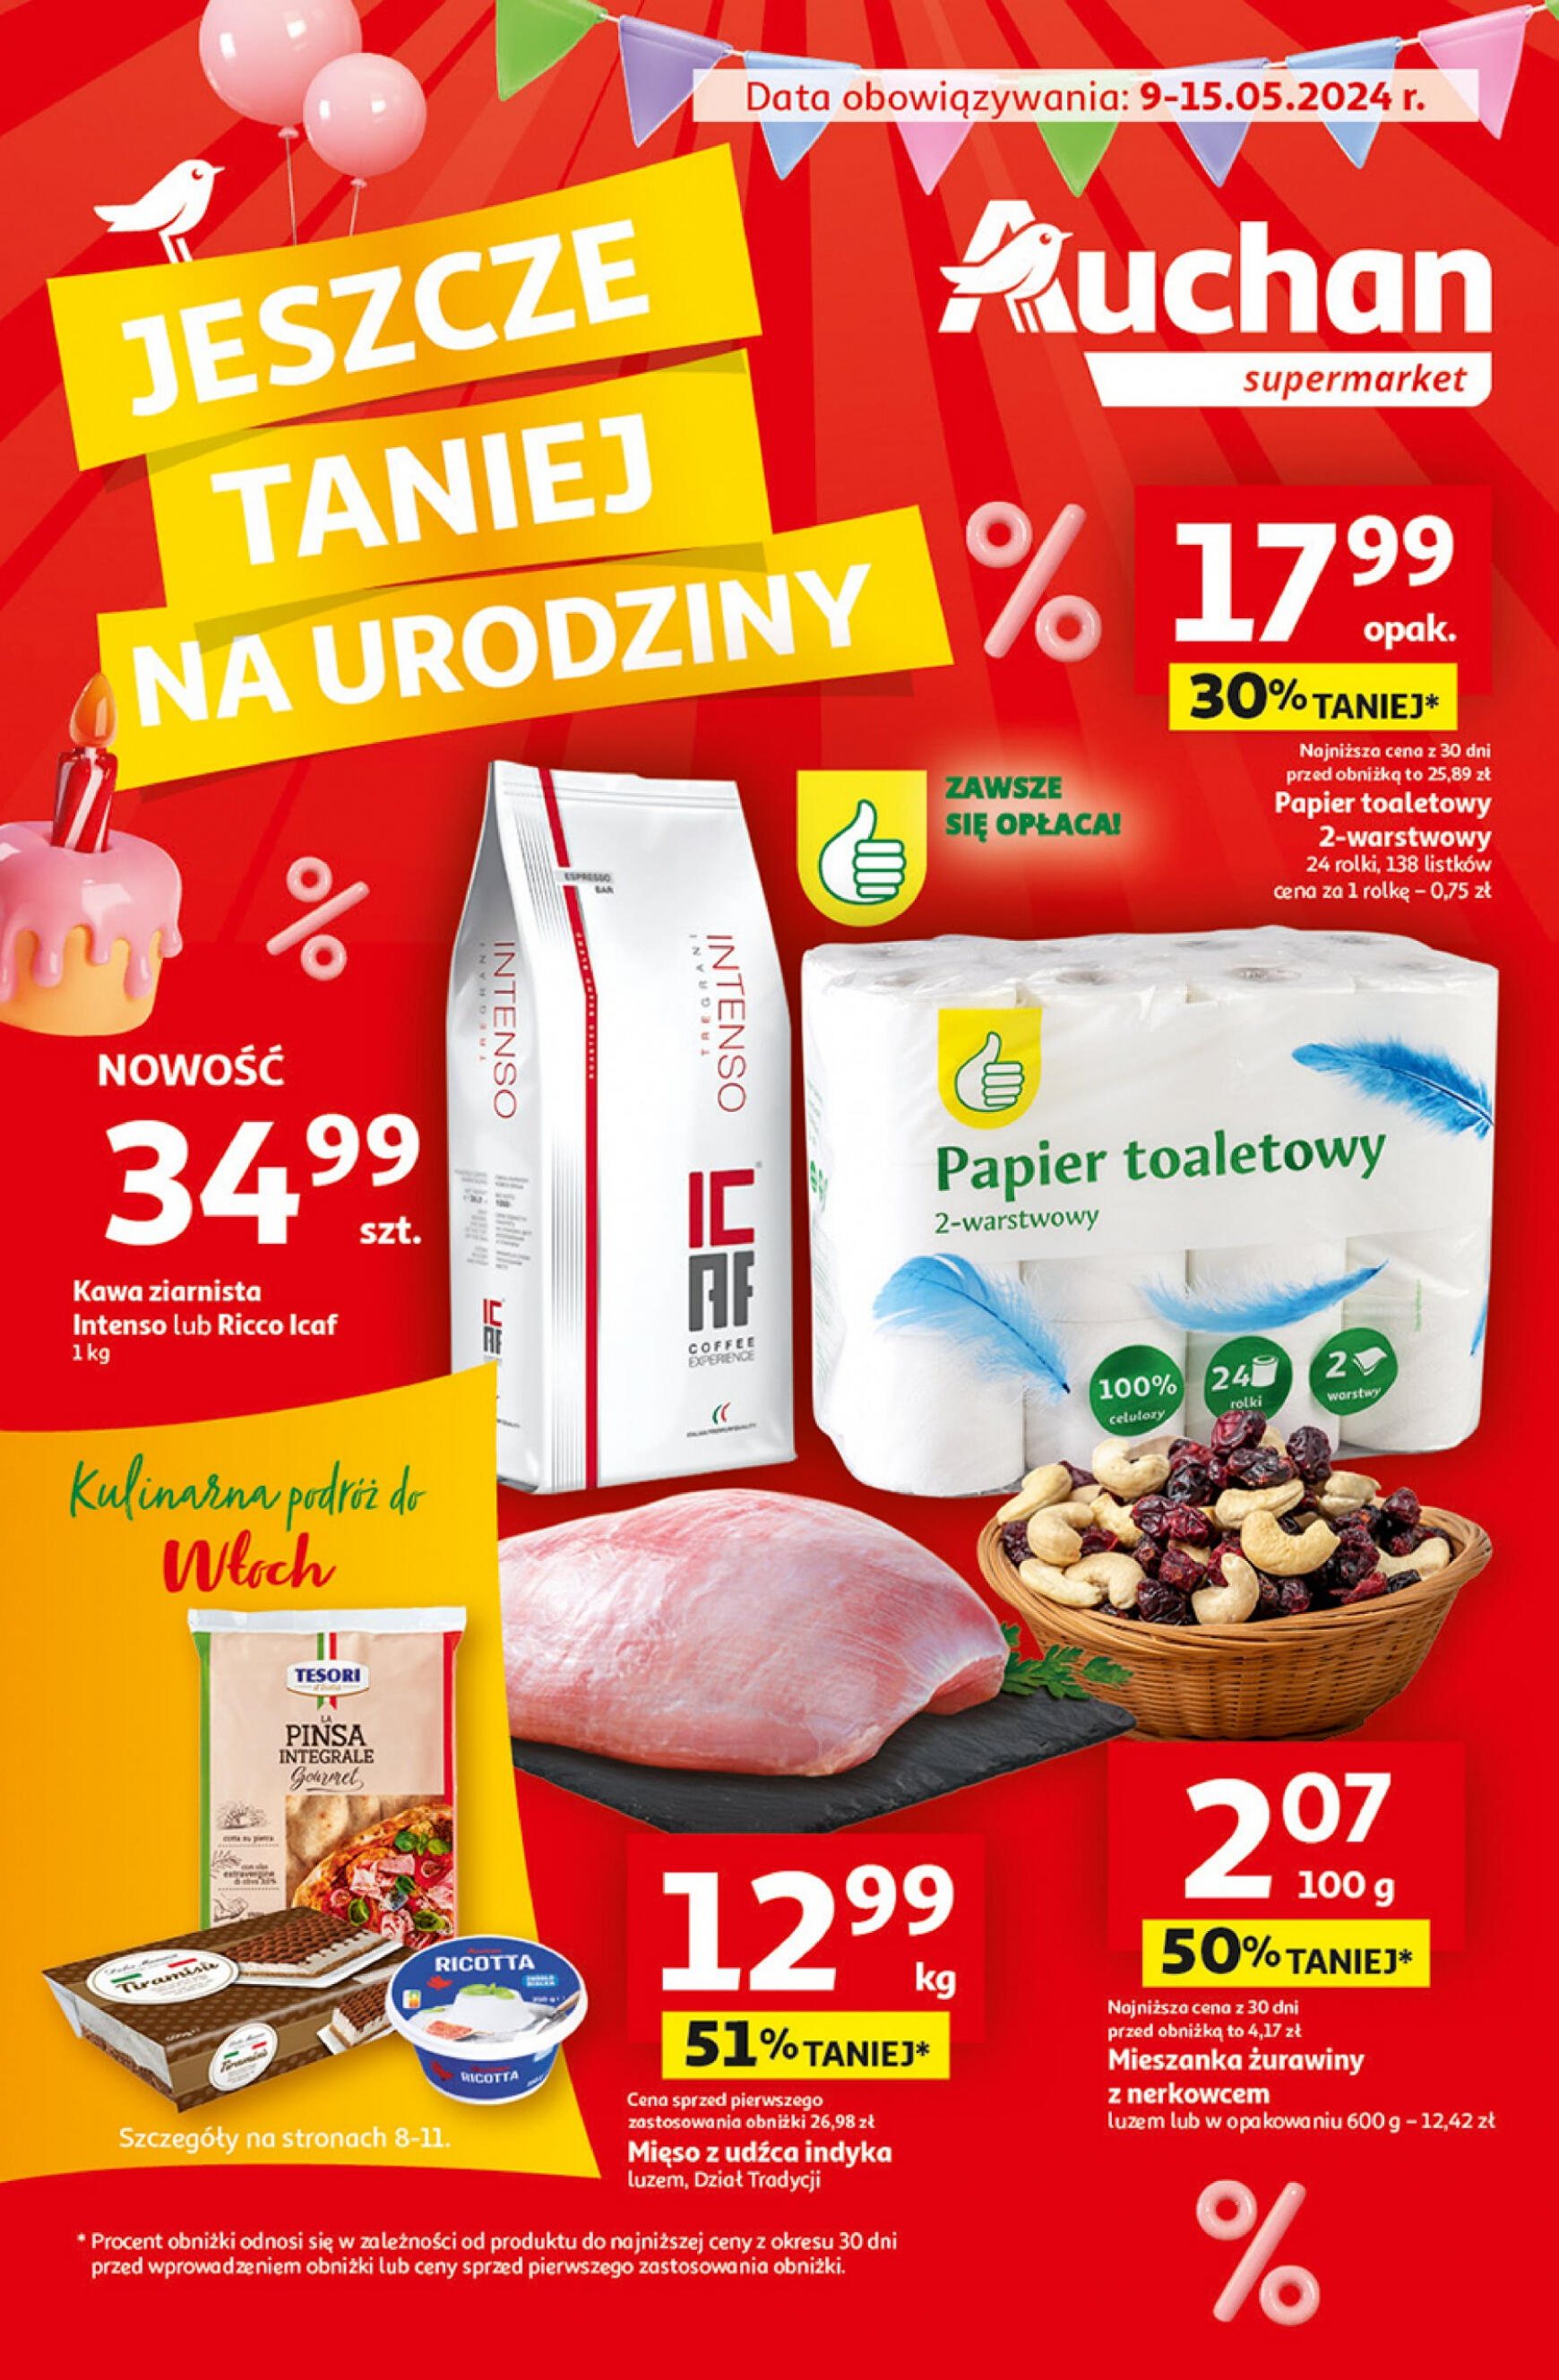 auchan - Supermarket Auchan - Gazetka Jeszcze taniej na urodziny gazetka aktualna ważna od 09.05. - 15.05. - page: 1